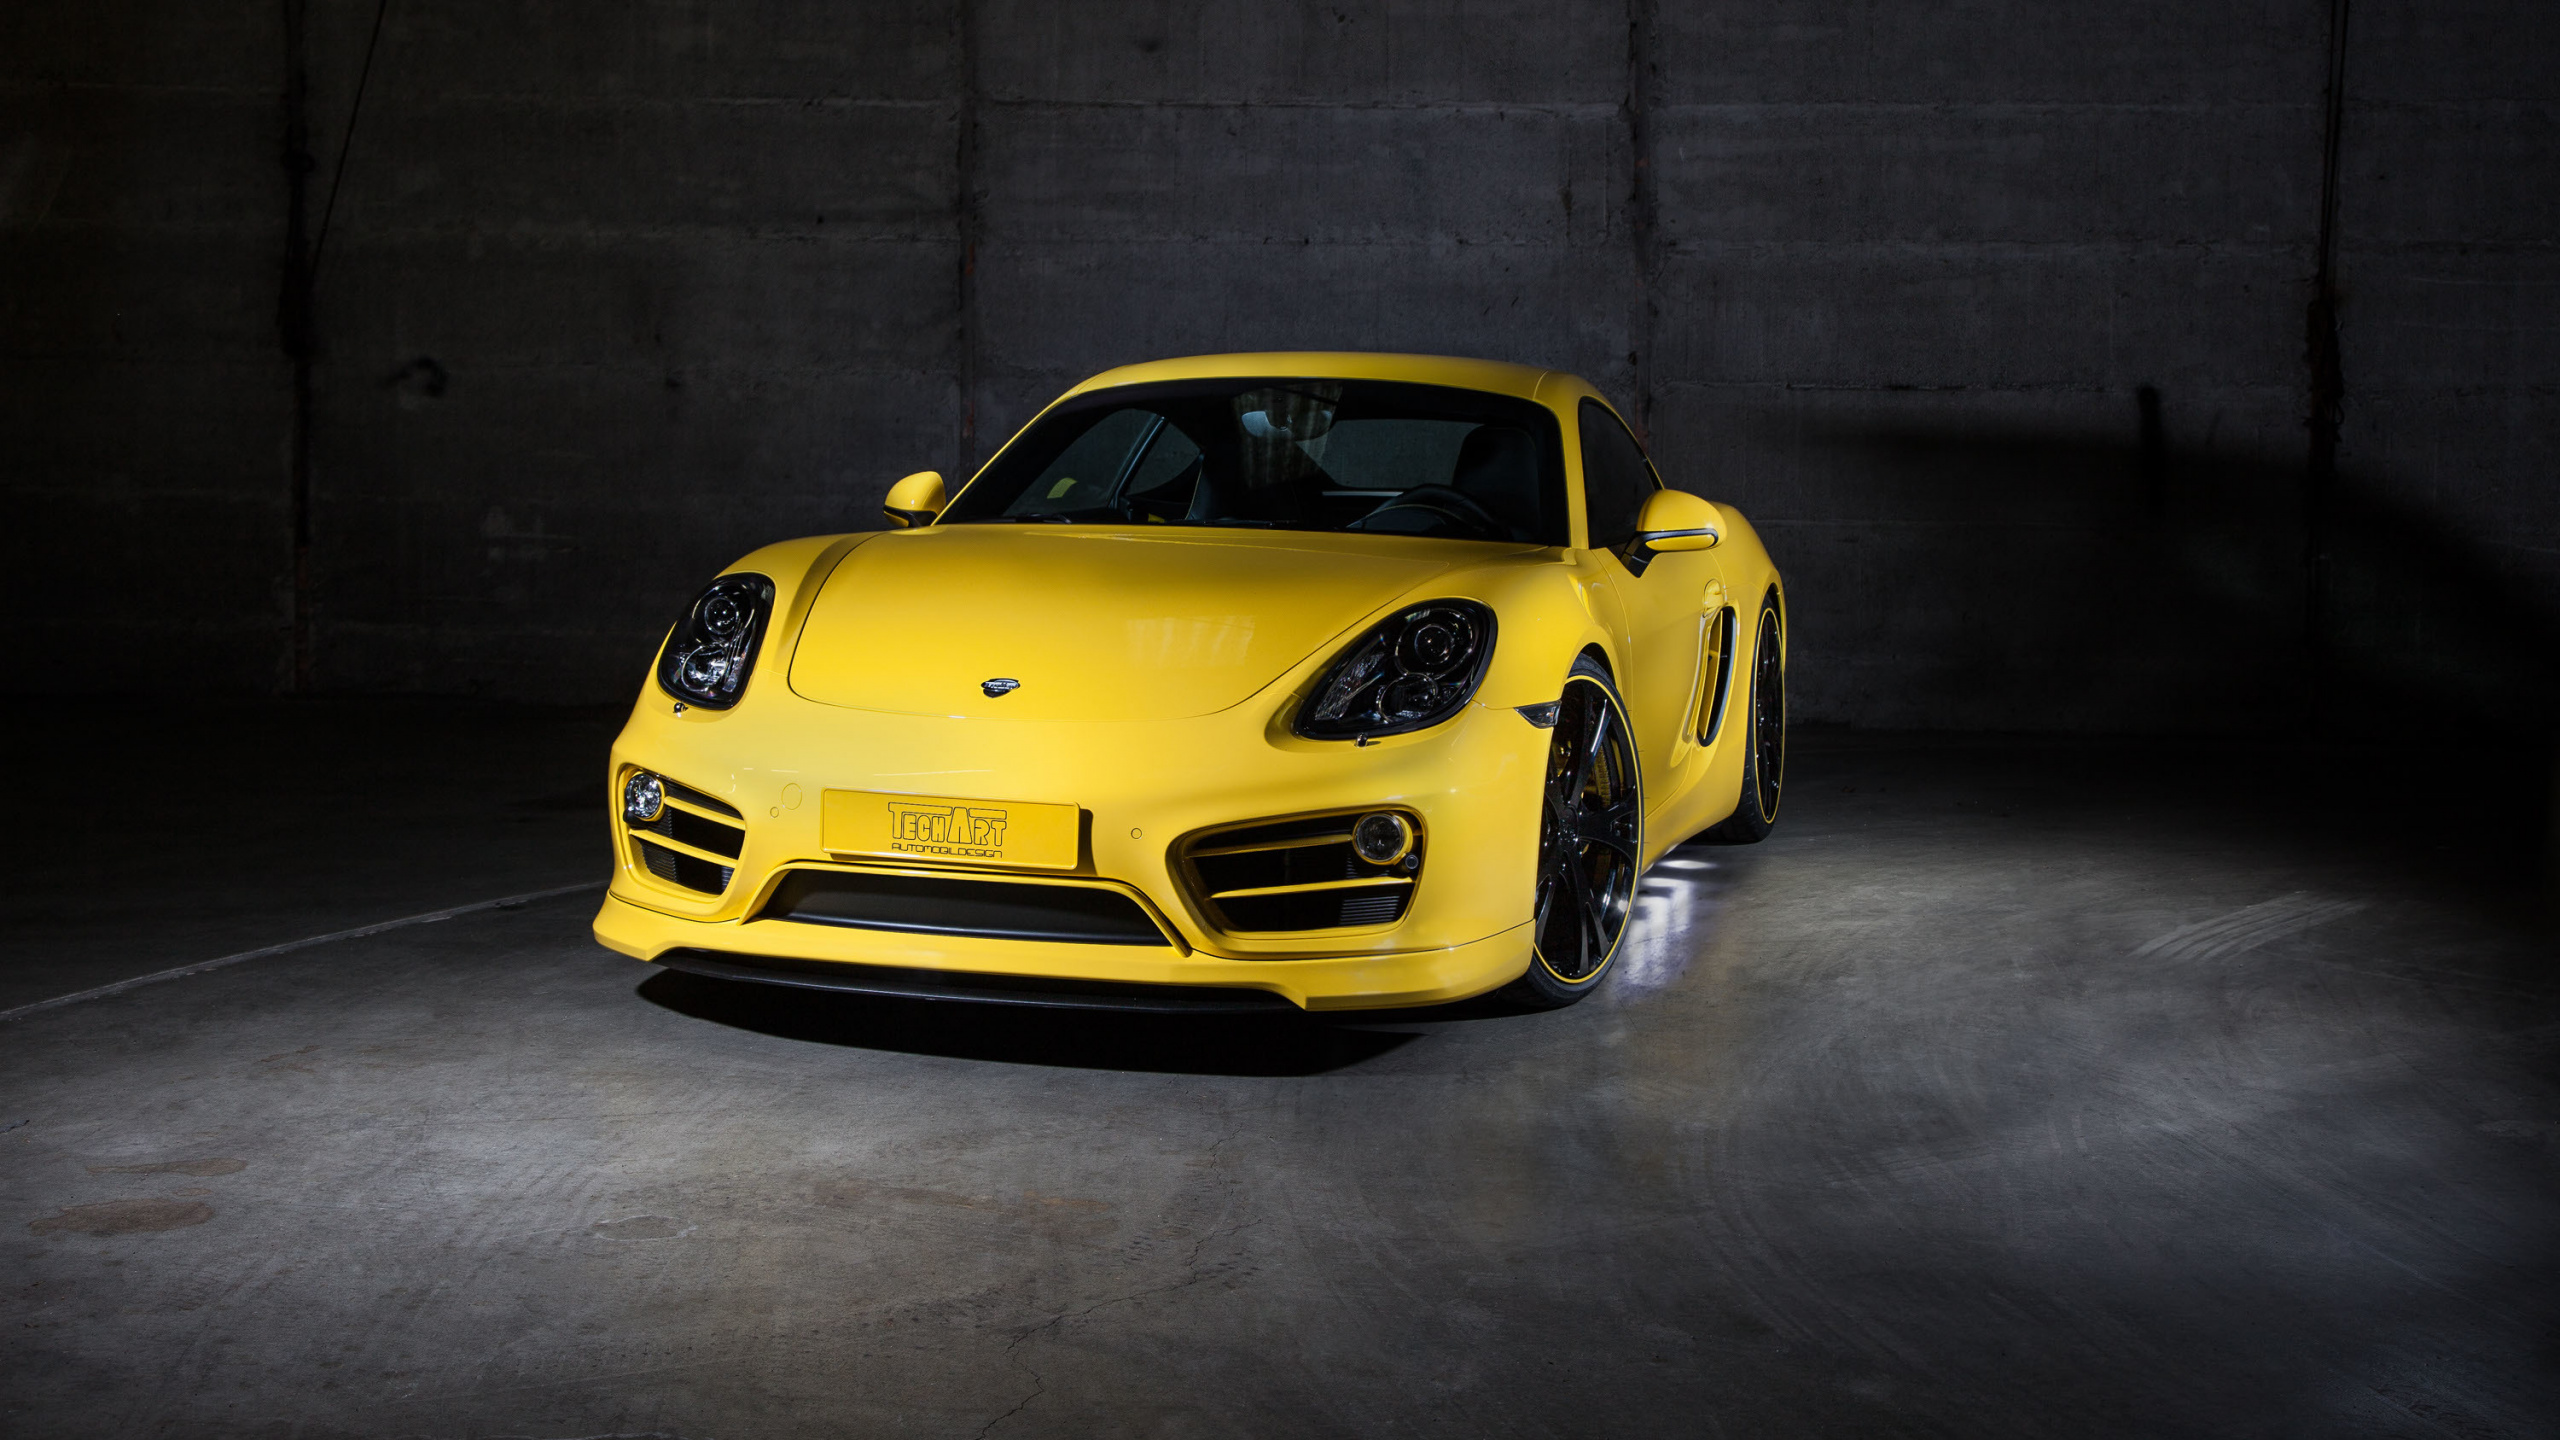 Porsche 911 Amarillo Estacionado en un Garaje. Wallpaper in 2560x1440 Resolution